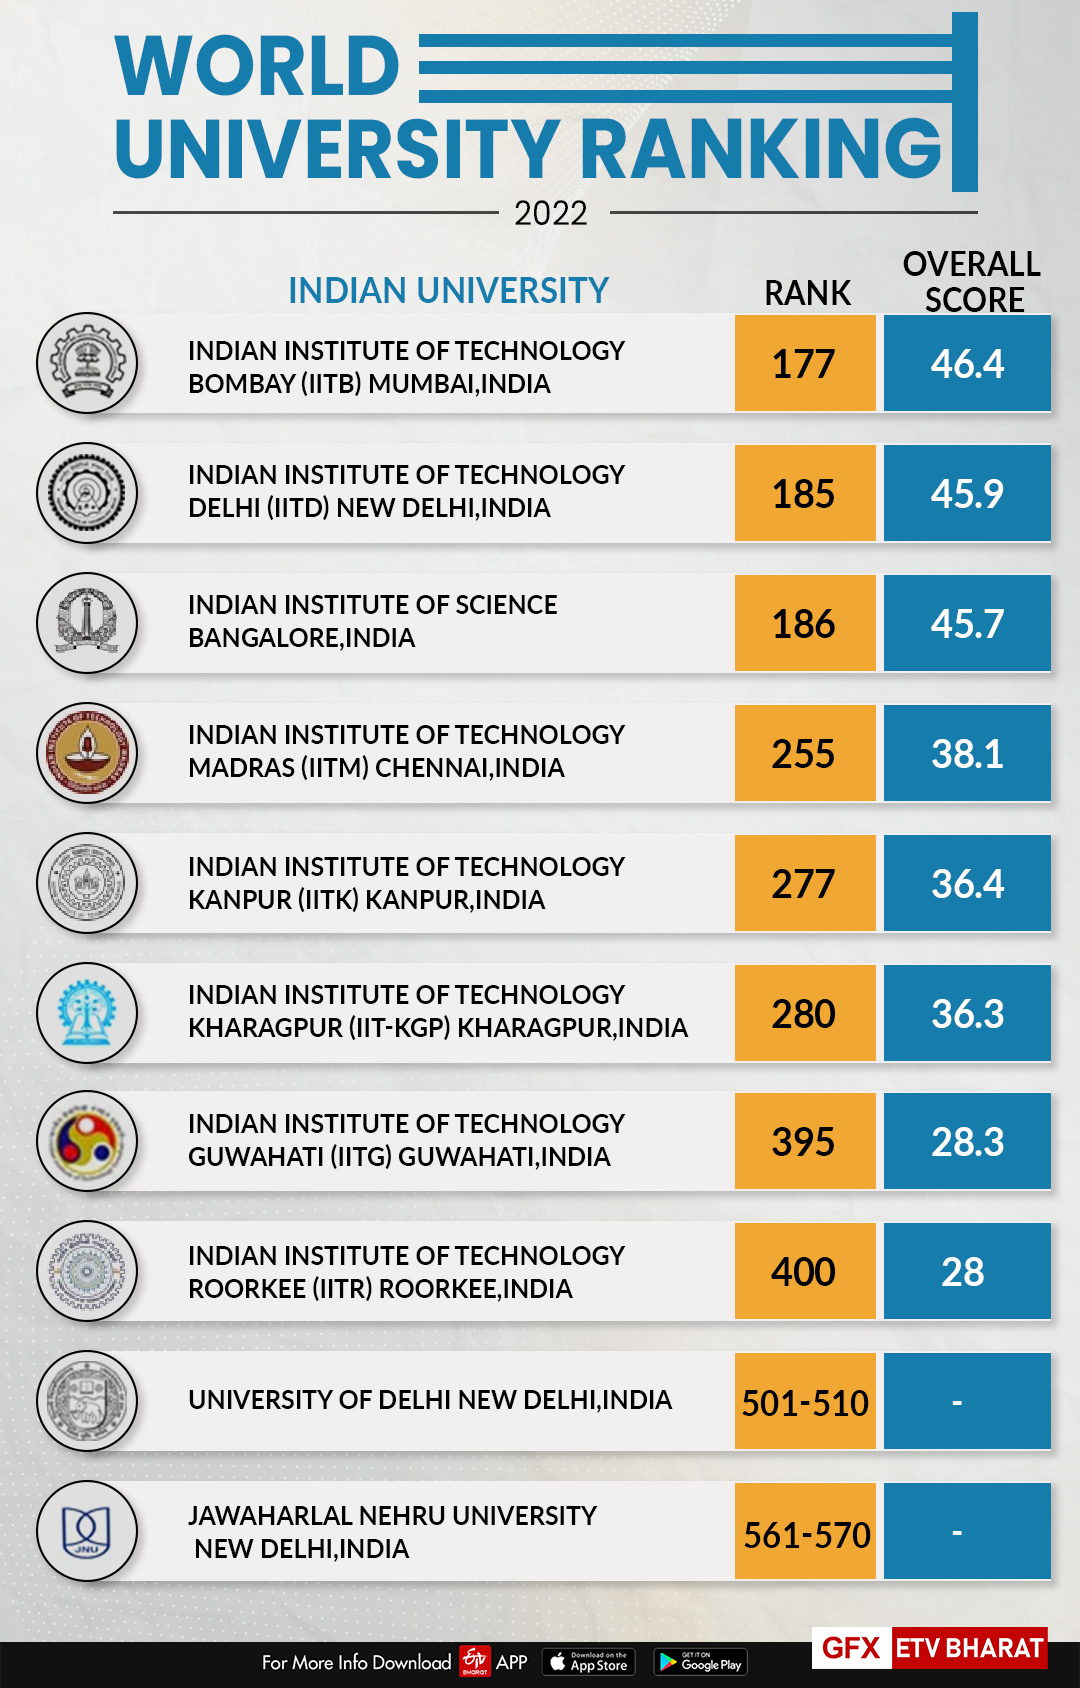 India's top universities